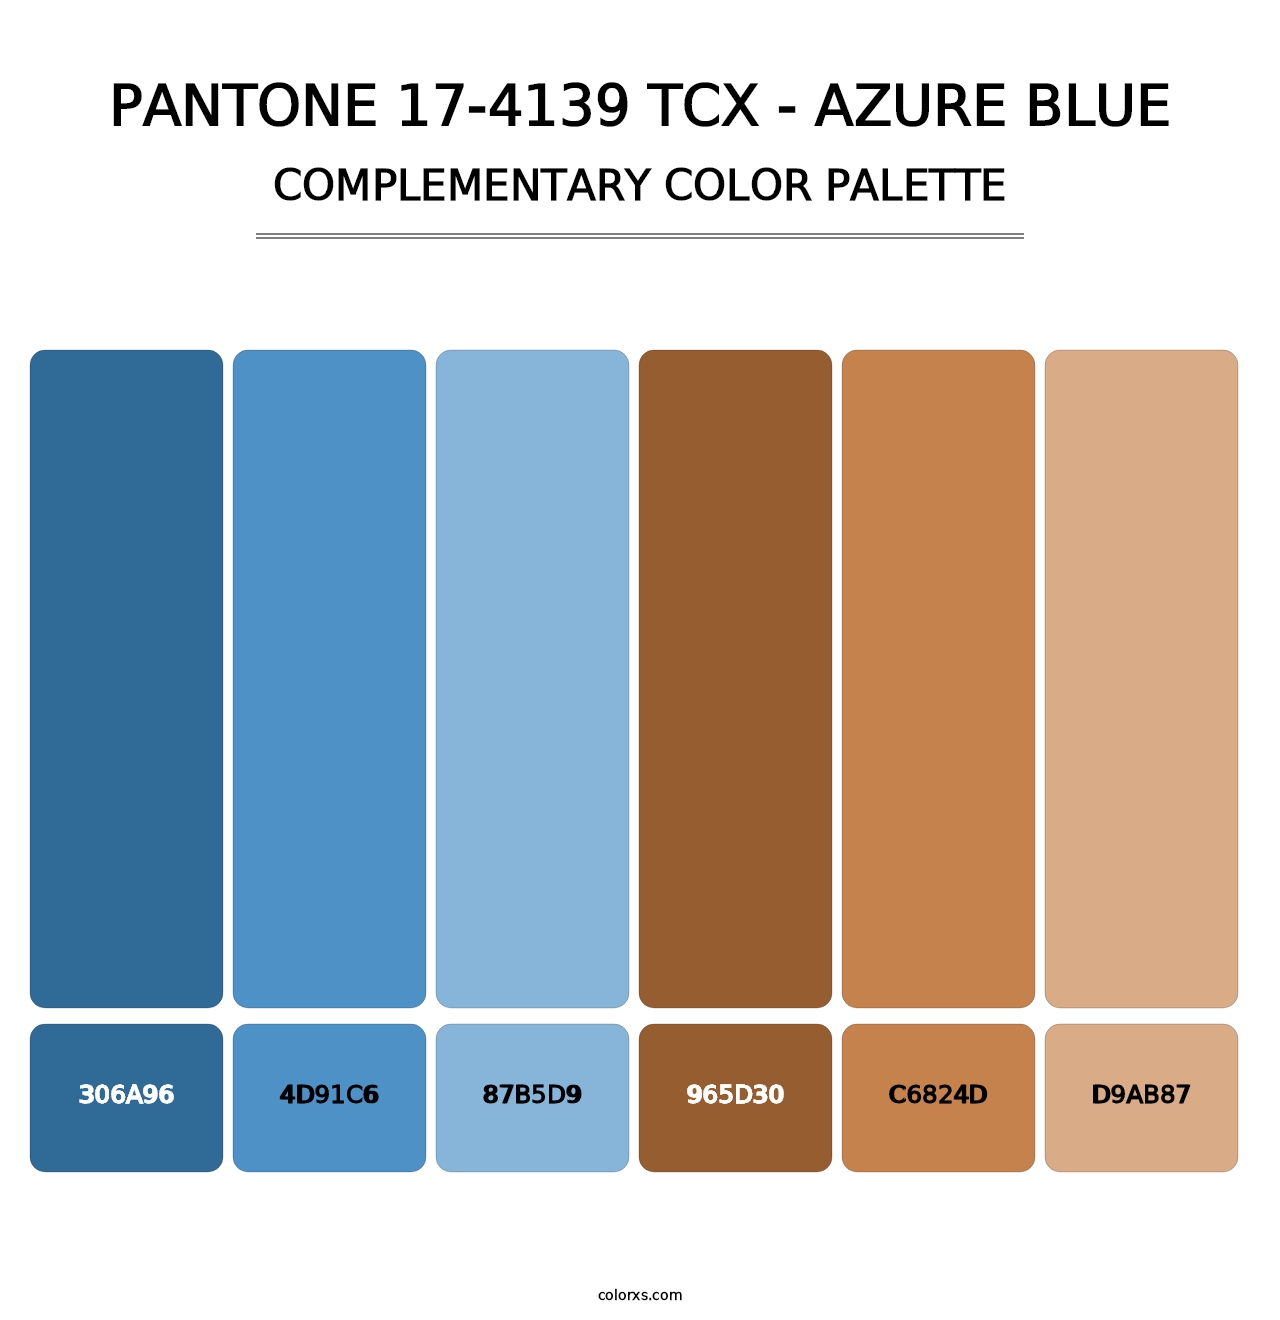 PANTONE 17-4139 TCX - Azure Blue - Complementary Color Palette